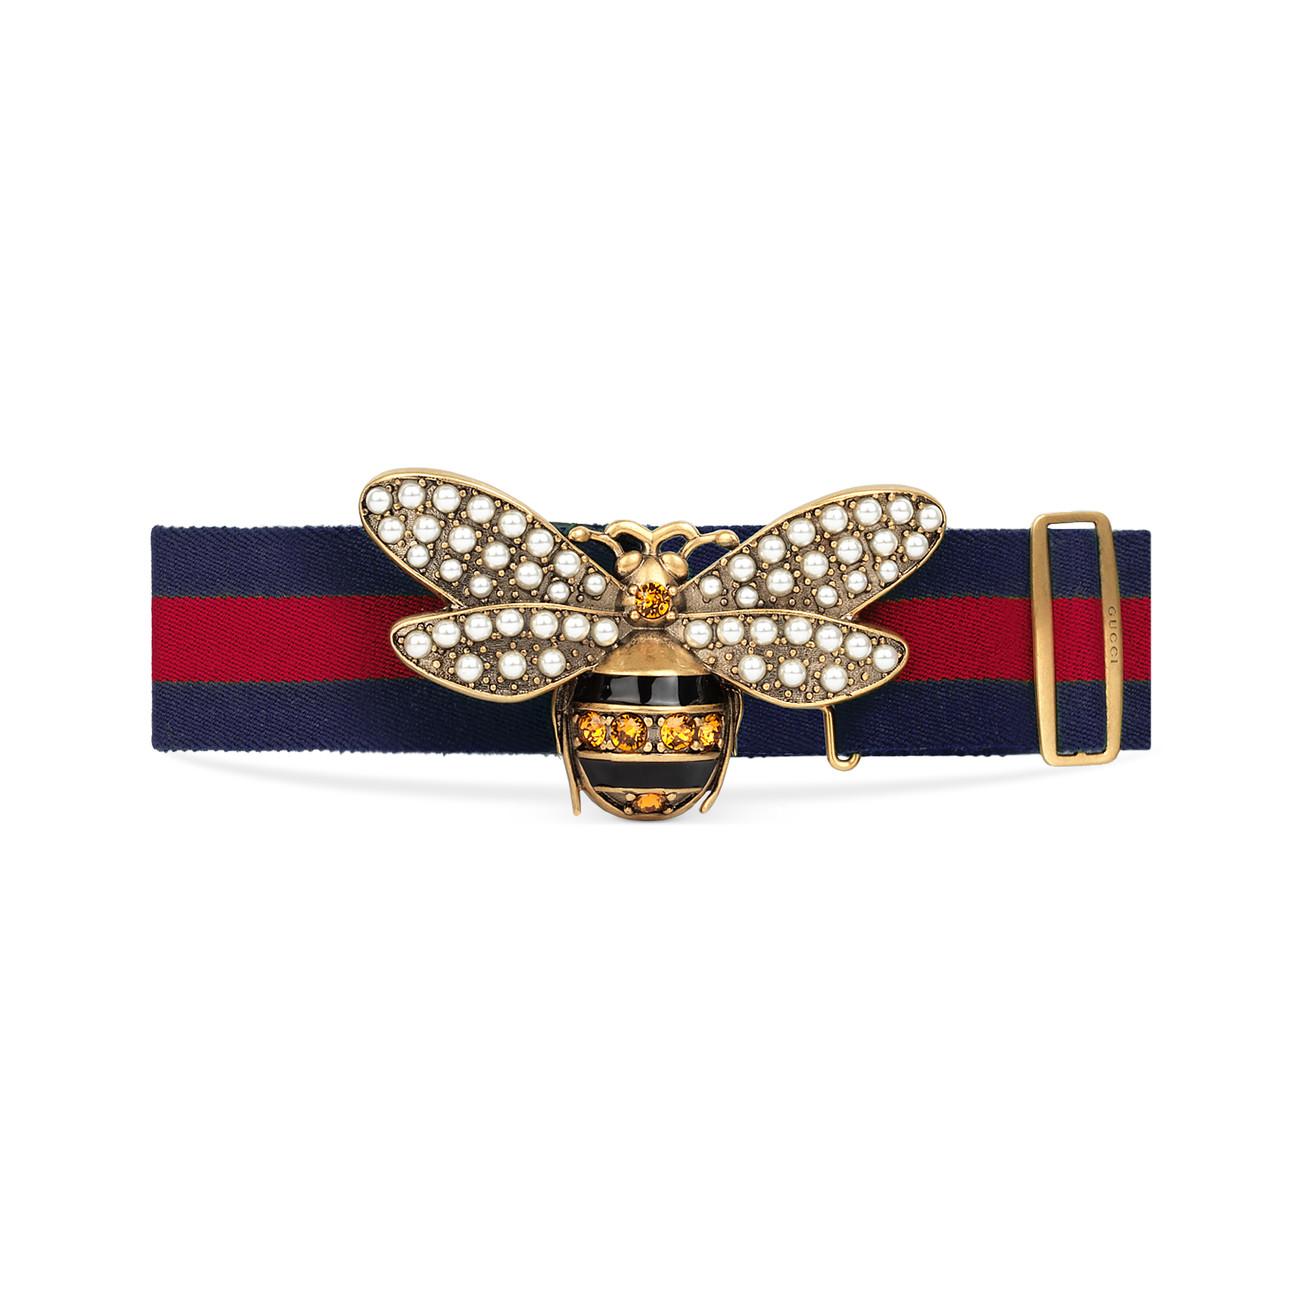 Dolce & Gabbana Red belt – The Wicker Bee